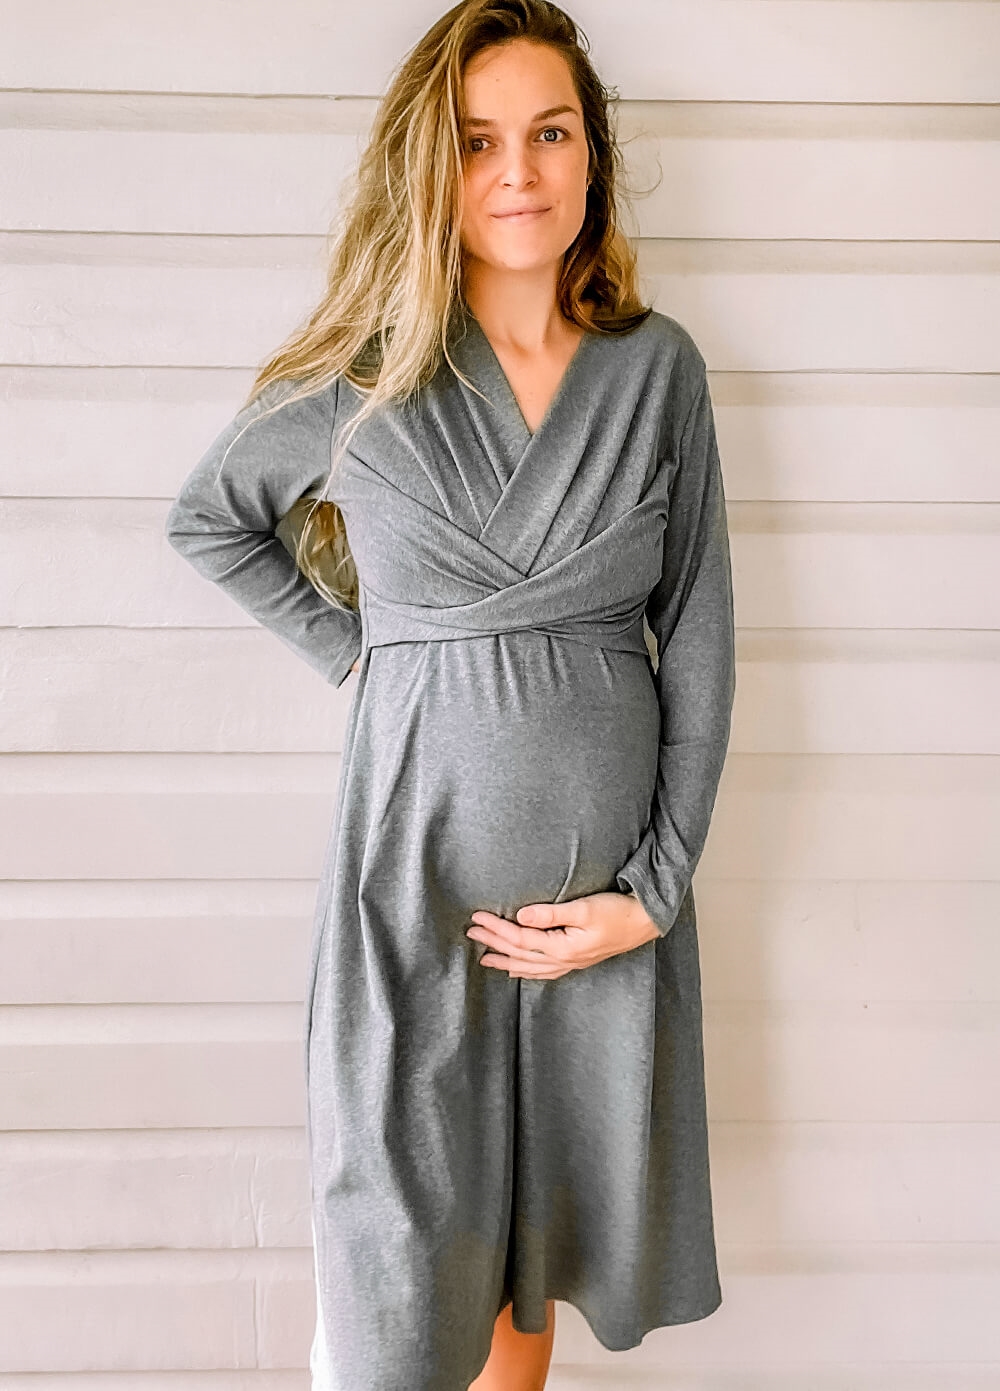 Lait & Co - Etienne Cross Pleat Front Maternity Dress in Grey